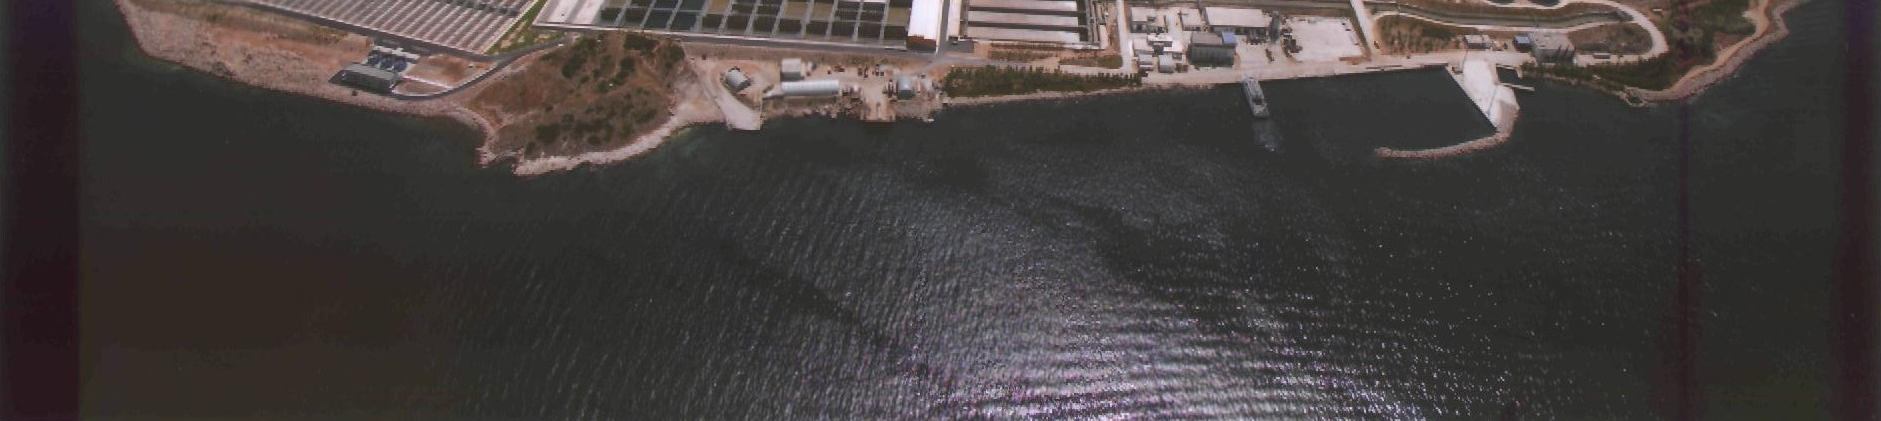 KΕΦΑΛΑΙΟ Ι ΠΕΡΙΓΡΑΦΗ ΤΟΥ ΚΕΛ ΨΥΤΤΑΛΕΙΑΣ 1. Εισαγωγή Το έργο άρχισε να κατασκευάζεται το 1983, όταν αποφασίστηκε η μεταφορά και η επεξεργασία των λυμάτων της Αττικής στη νήσο Ψυττάλεια.